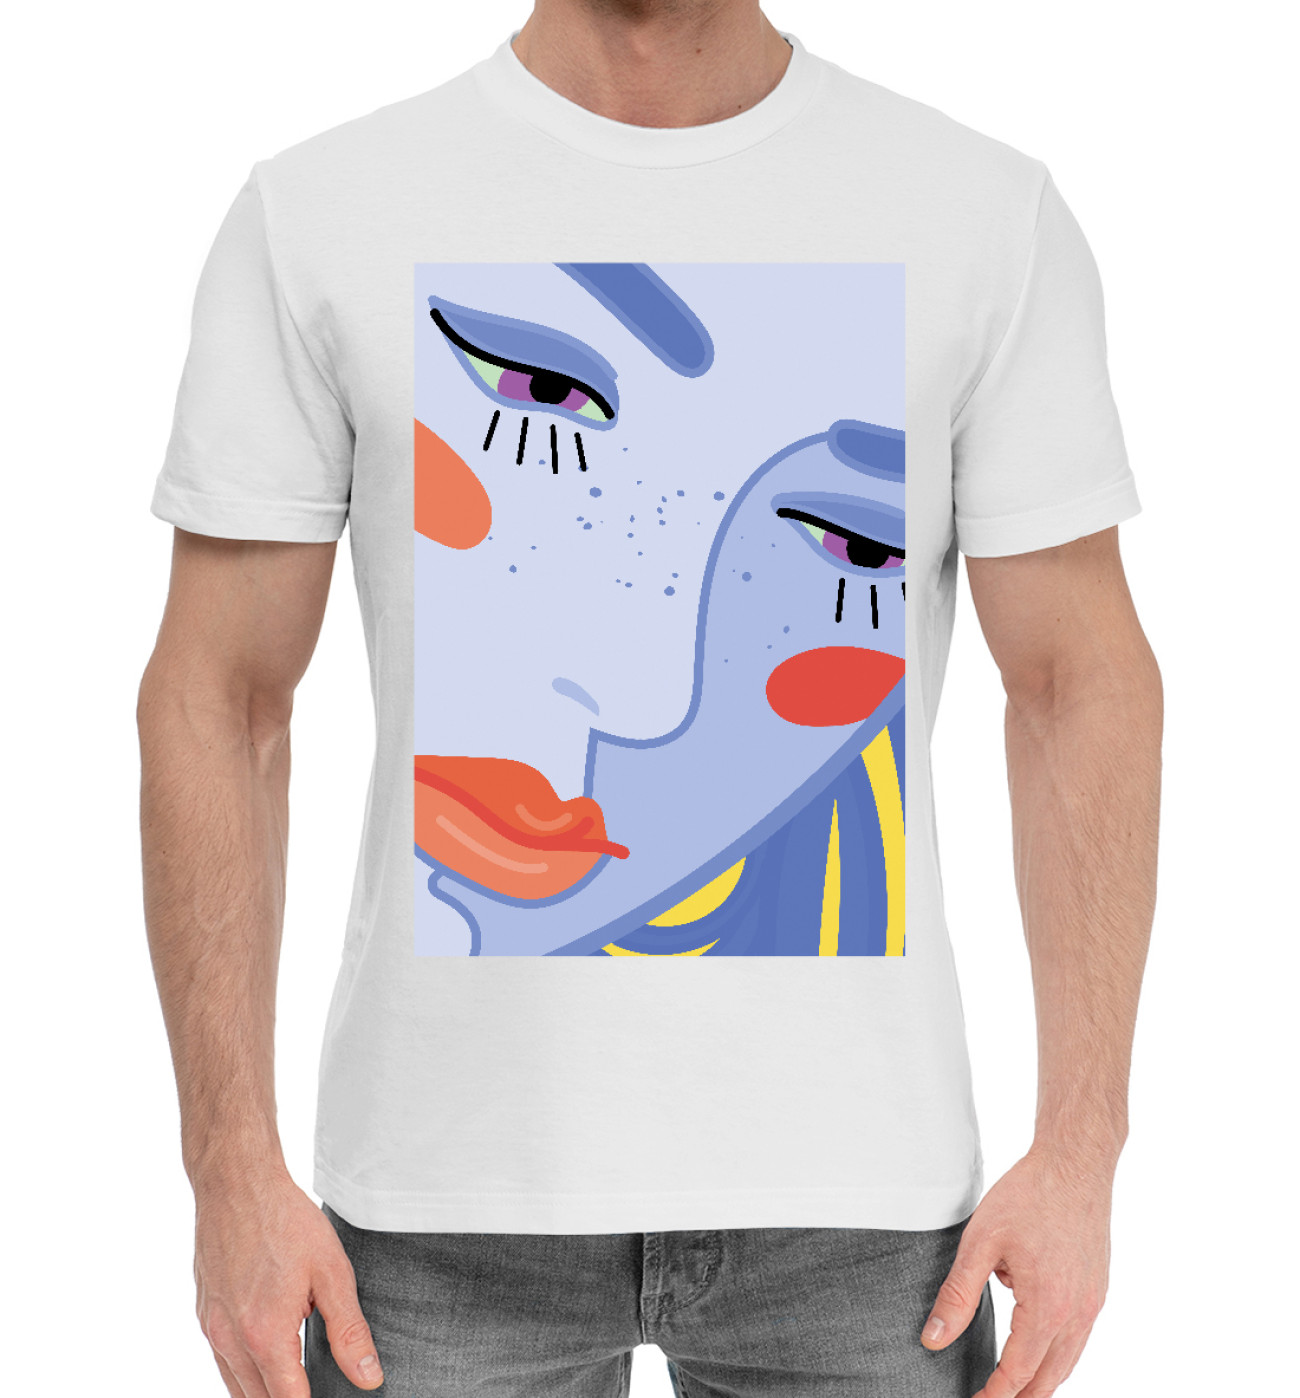 Мужская Хлопковая футболка Женский портрет в яркой цветовой гамме, артикул: DVU-788035-hfu-2